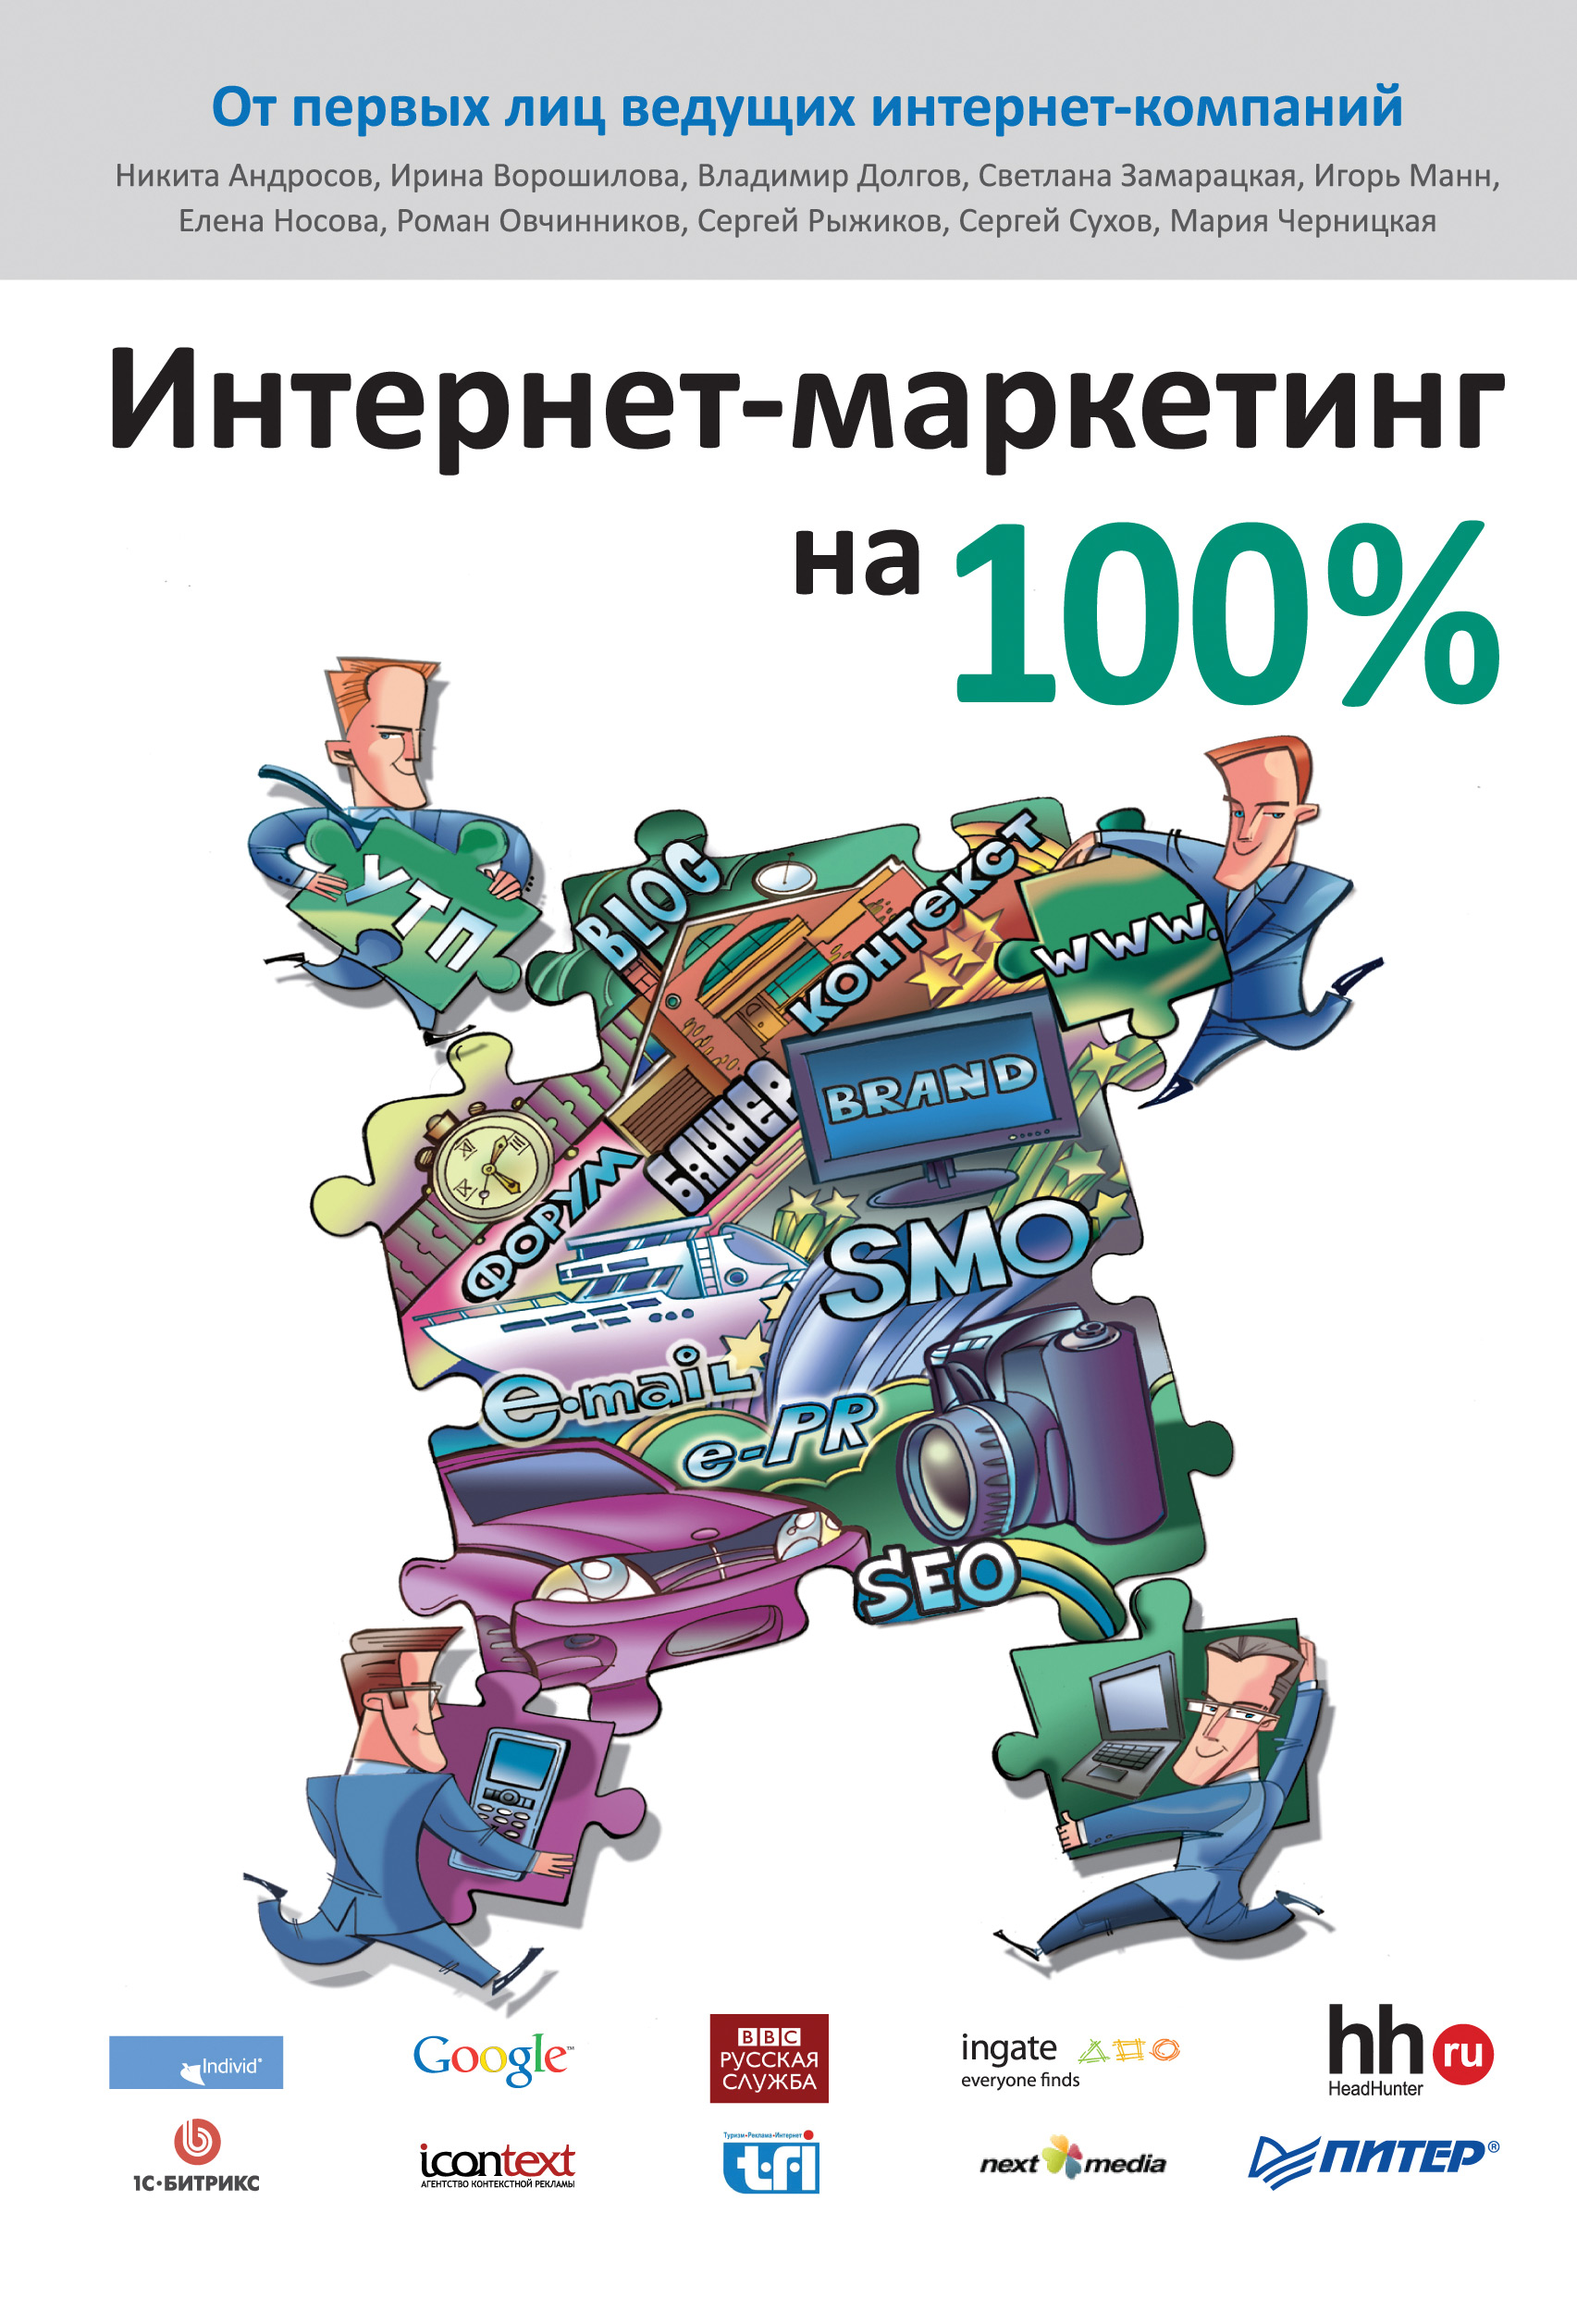 Книга  Интернет-маркетинг на 100% созданная Сергей Сухов, Коллектив авторов может относится к жанру интернет, интернет-маркетинг, привлечение клиентов. Стоимость электронной книги Интернет-маркетинг на 100% с идентификатором 425772 составляет 89.00 руб.